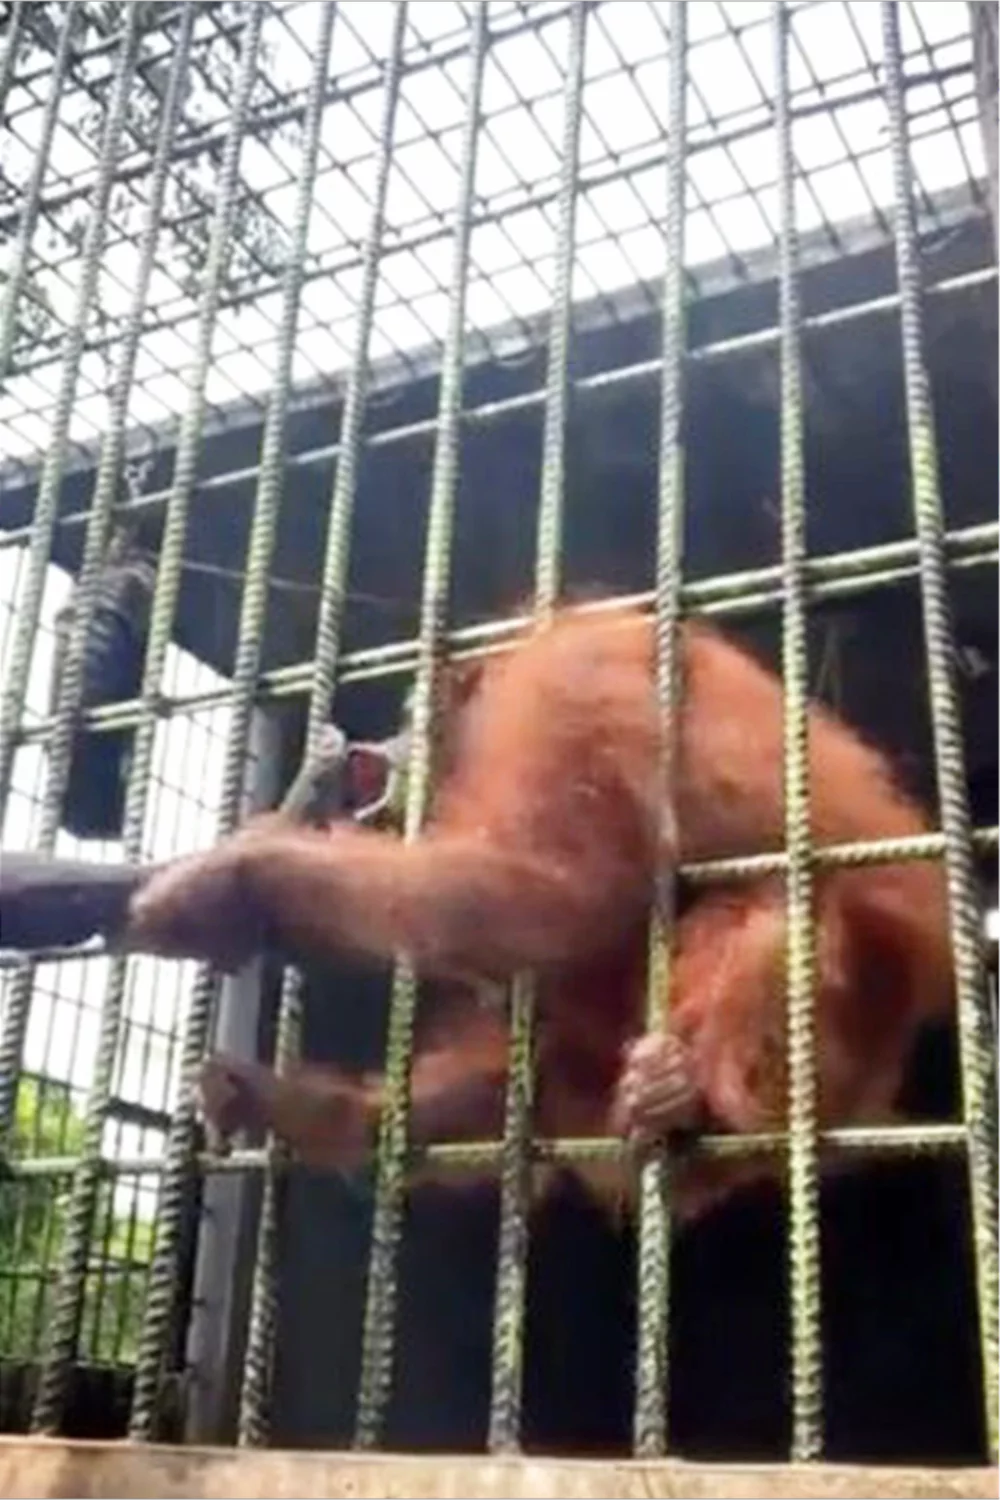 Tras la lucha el hombre logra escapar del orangután.